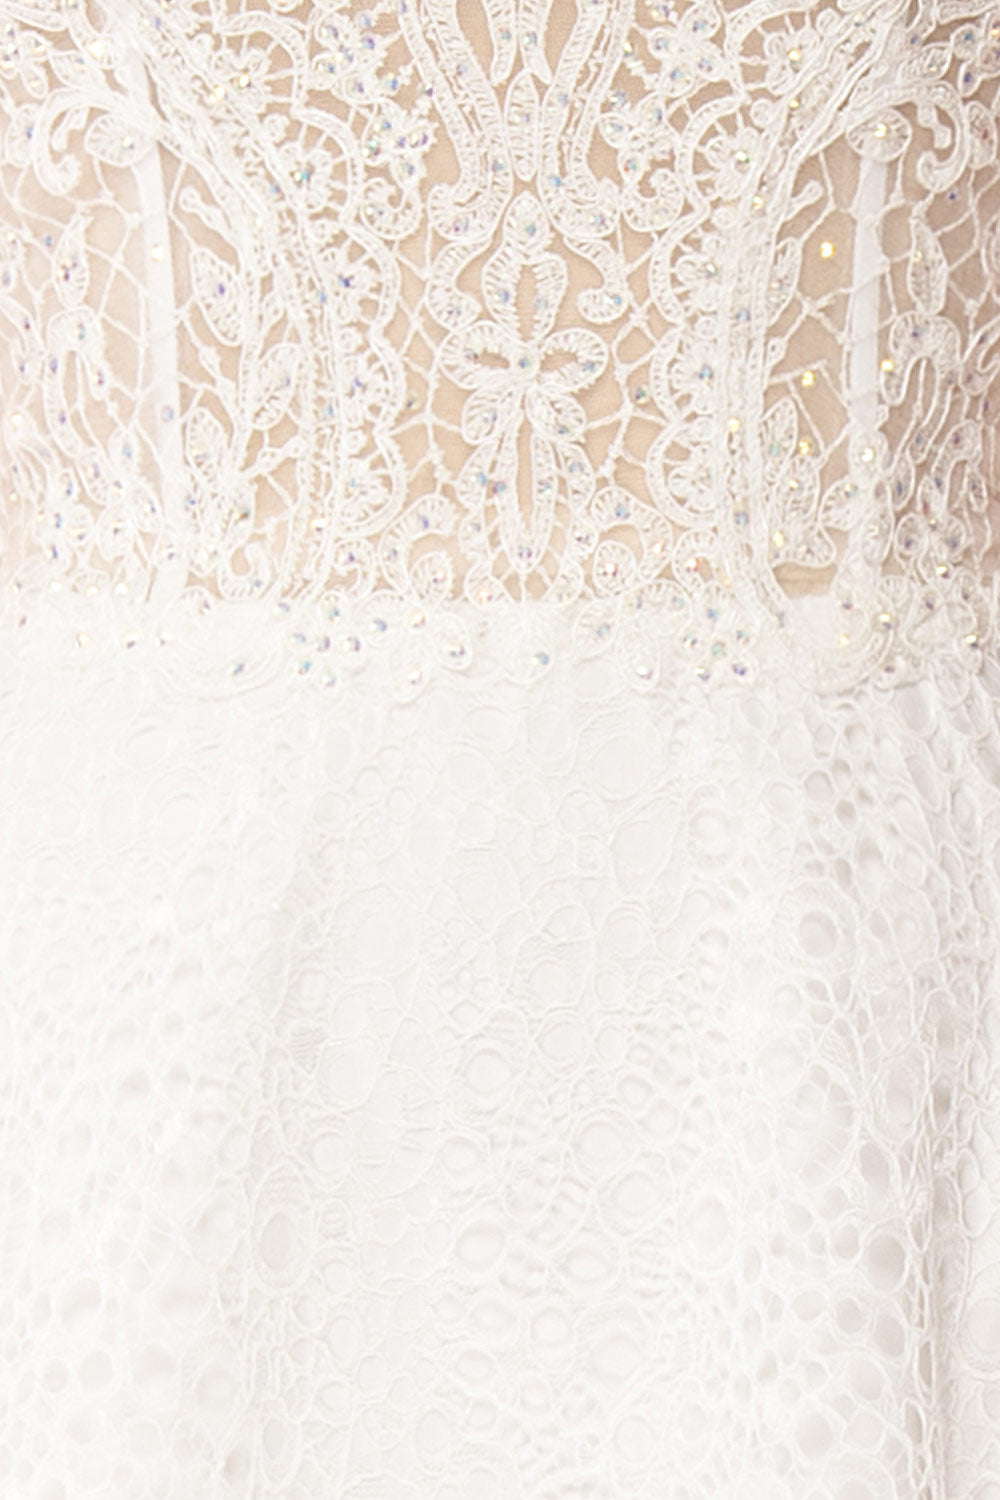 Cybelle White Lace Off-Shoulder A-Line Bridal Dress fabric close up | Boudoir 1861